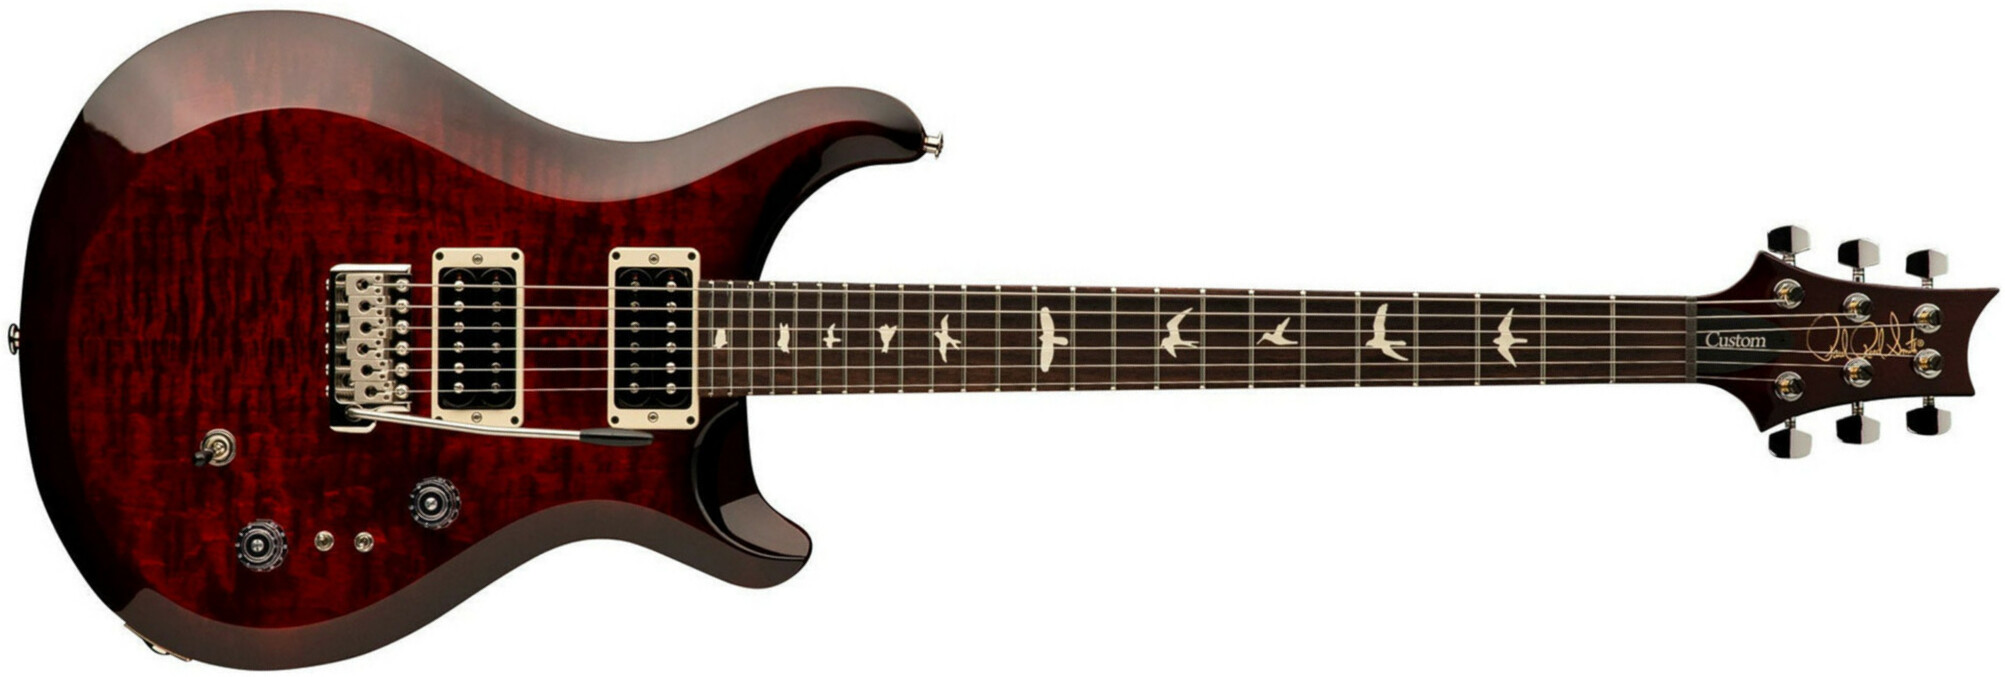 Prs S2 Custom 24-08 2h Trem Rw - Fire Red Burst - Guitarra eléctrica de doble corte. - Main picture